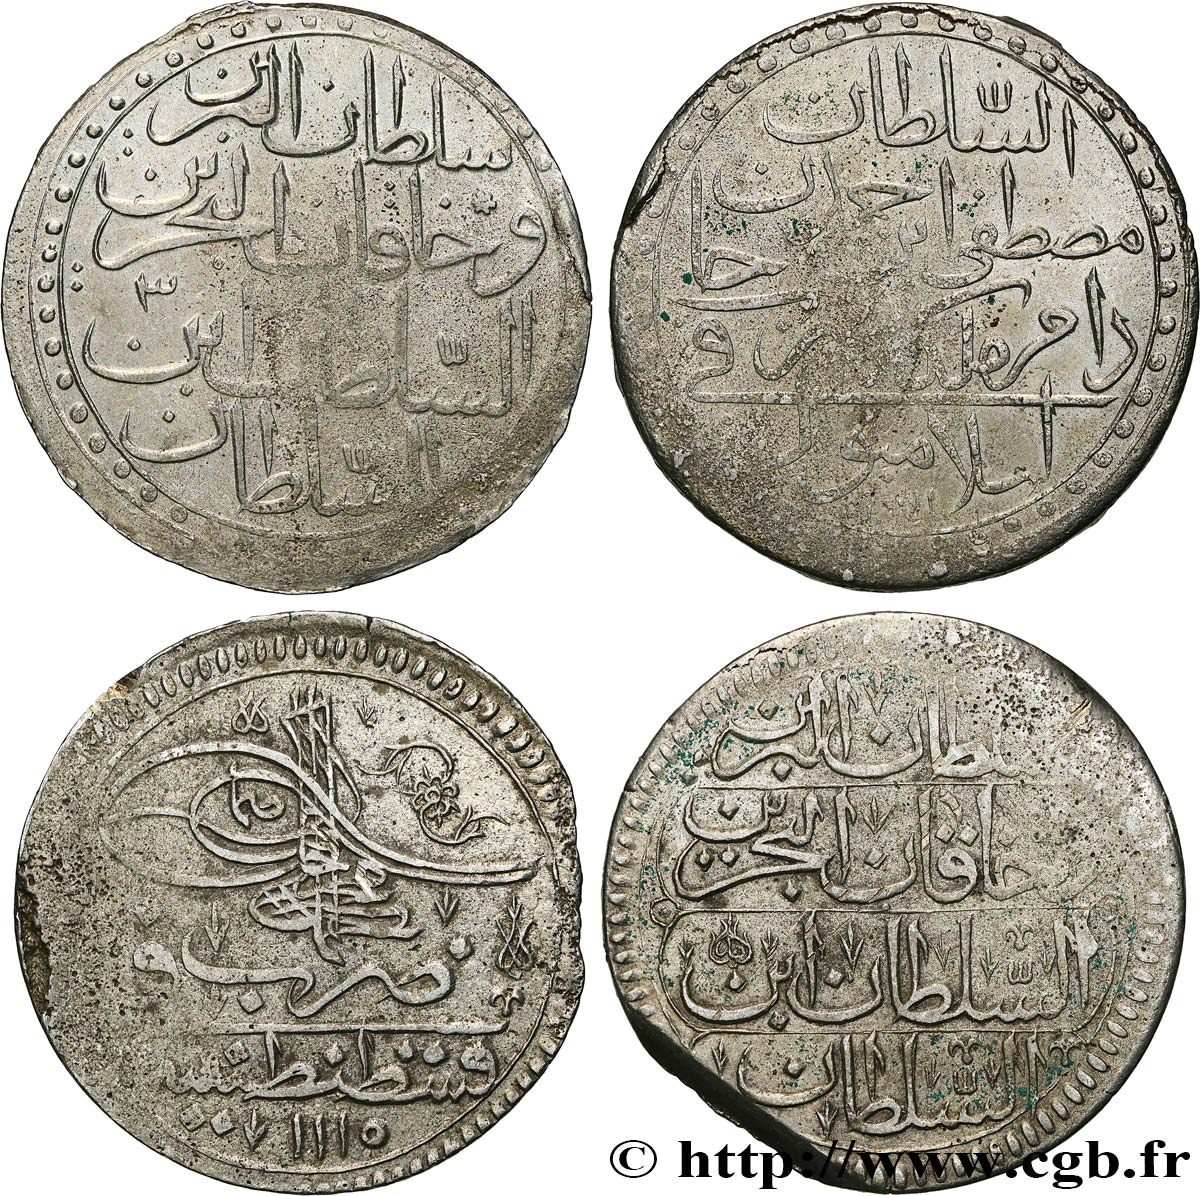 LOTS Lot de deux monnaies ottomanes n.d.  SS 